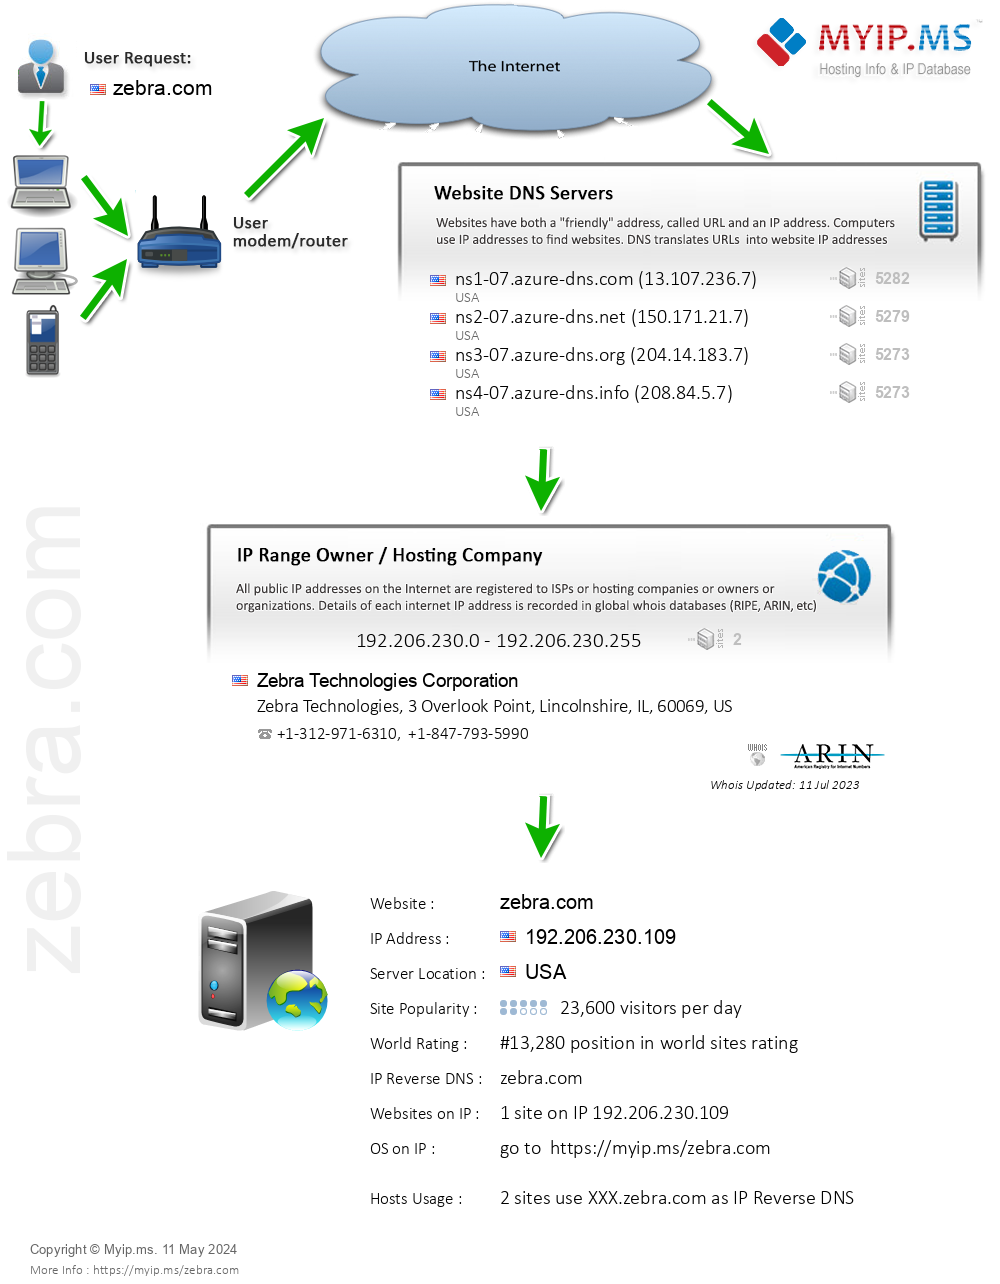 Zebra.com - Website Hosting Visual IP Diagram